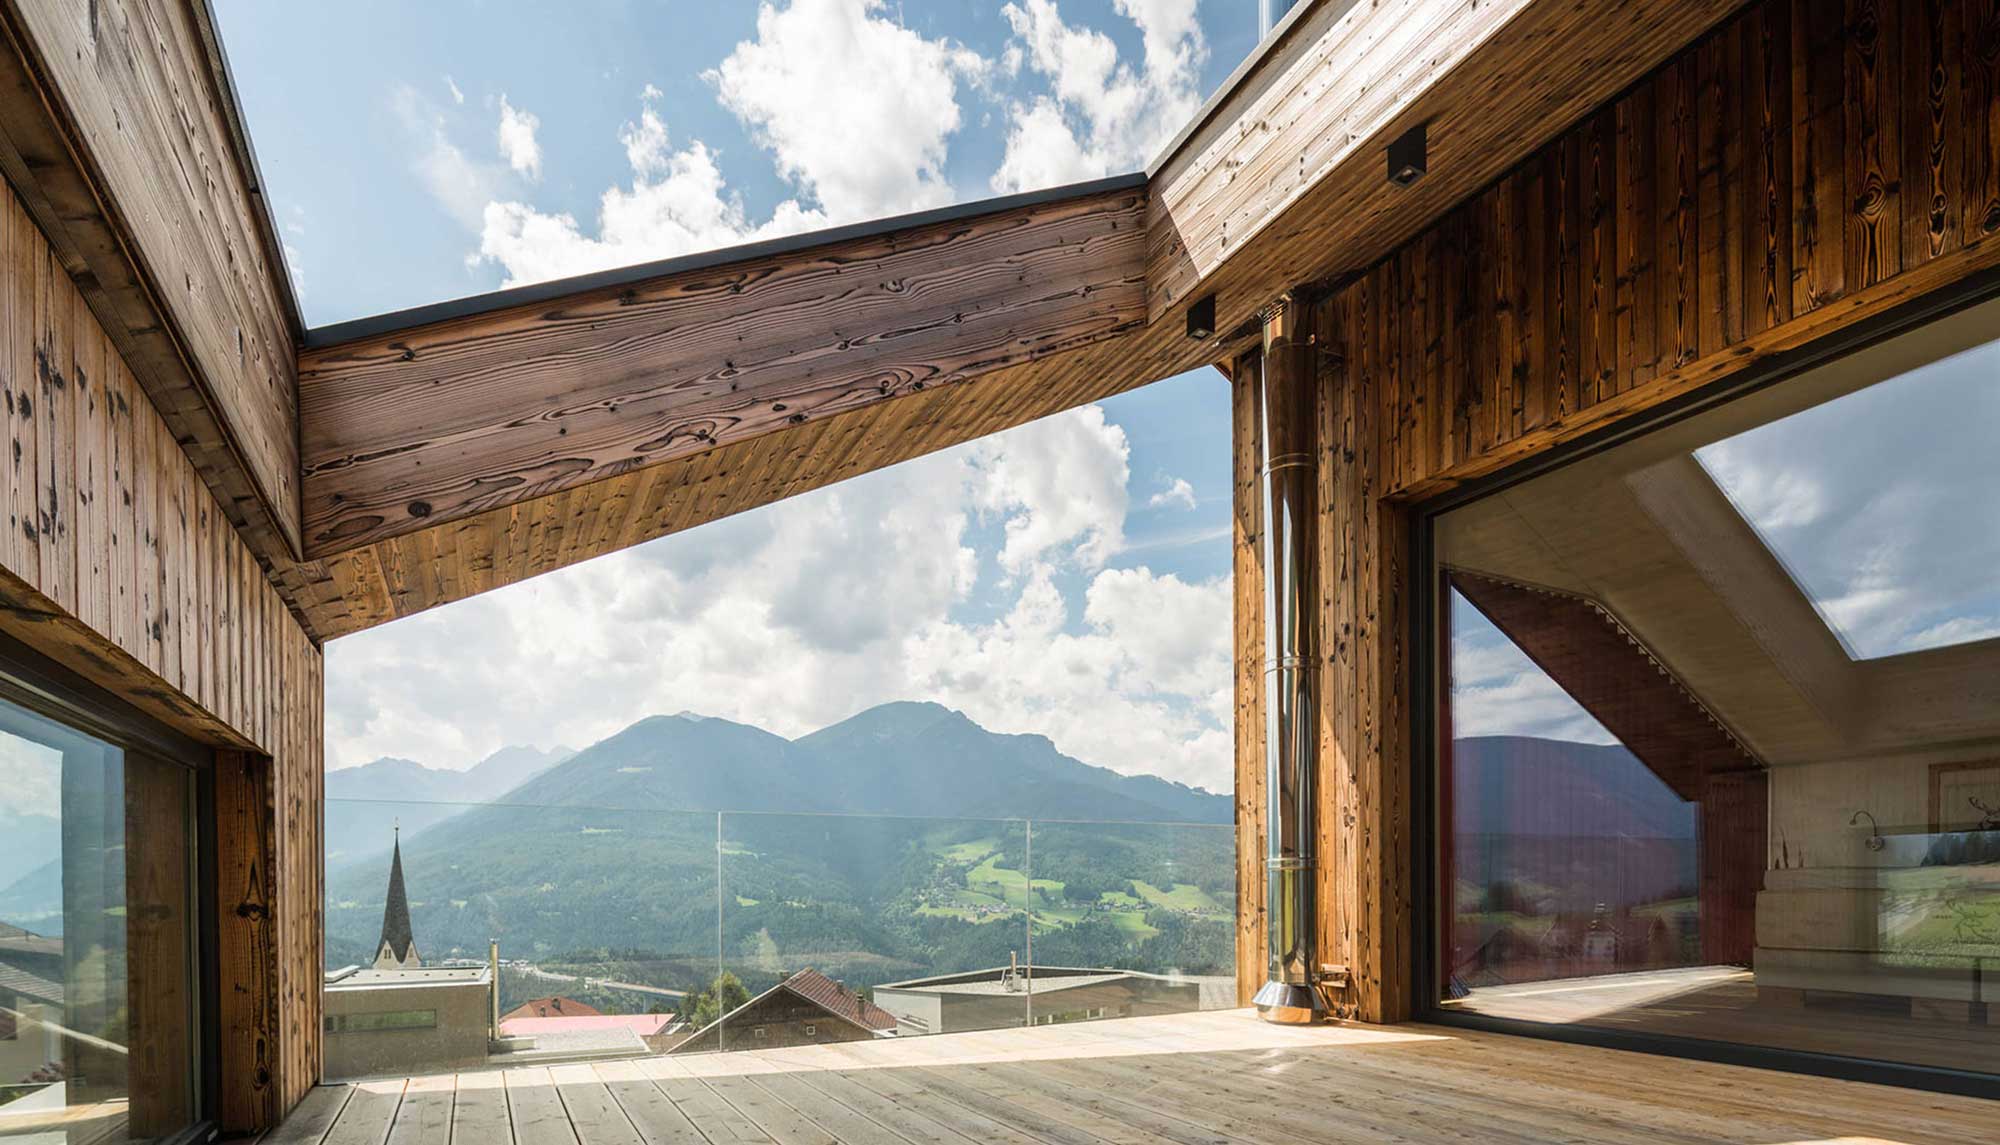 Ausblick von Terrasse Einfamilienhaus auf Berge und Dorf | Architekturhäuser | Planung Architekturbüro SNOW Tirol und Kärnten